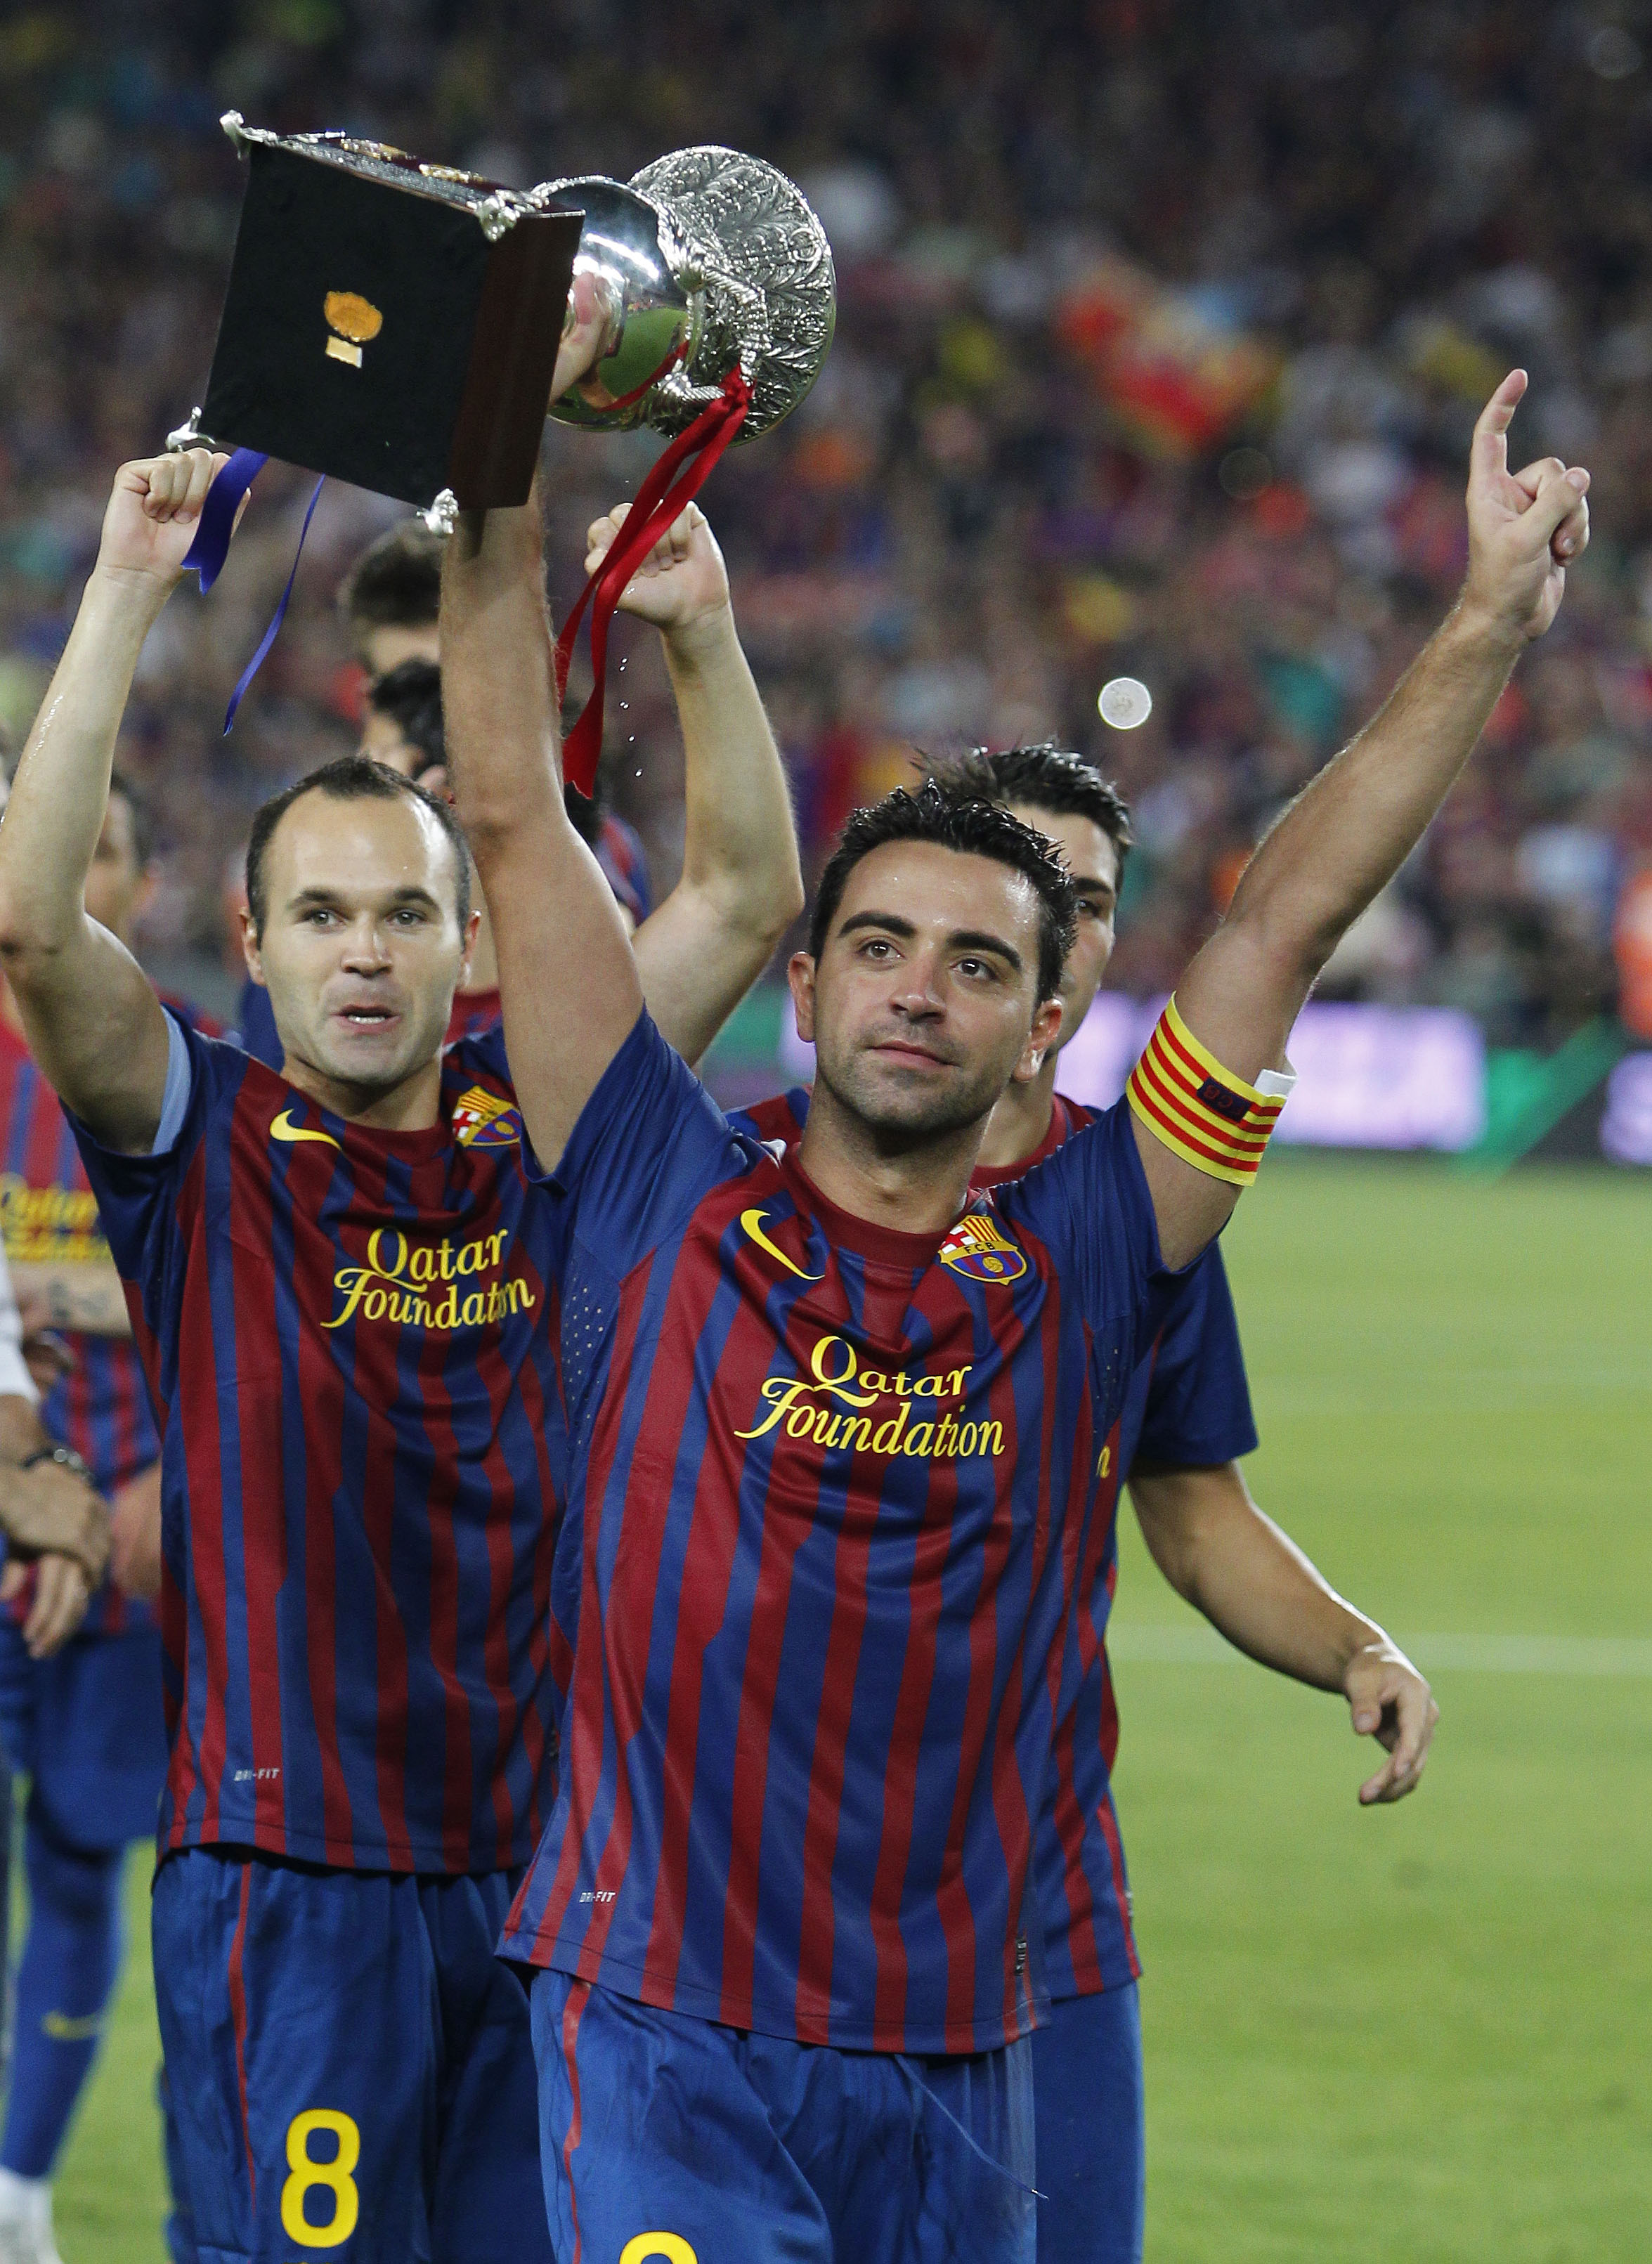 För andra året i rad är även Xavi nominerad till Ballon d'Or. Barcelonas mittfältsgeneral har nu vunnit nästan exakt allt man kan tänkas lägga sina vantar på som fotbollsspelare. 